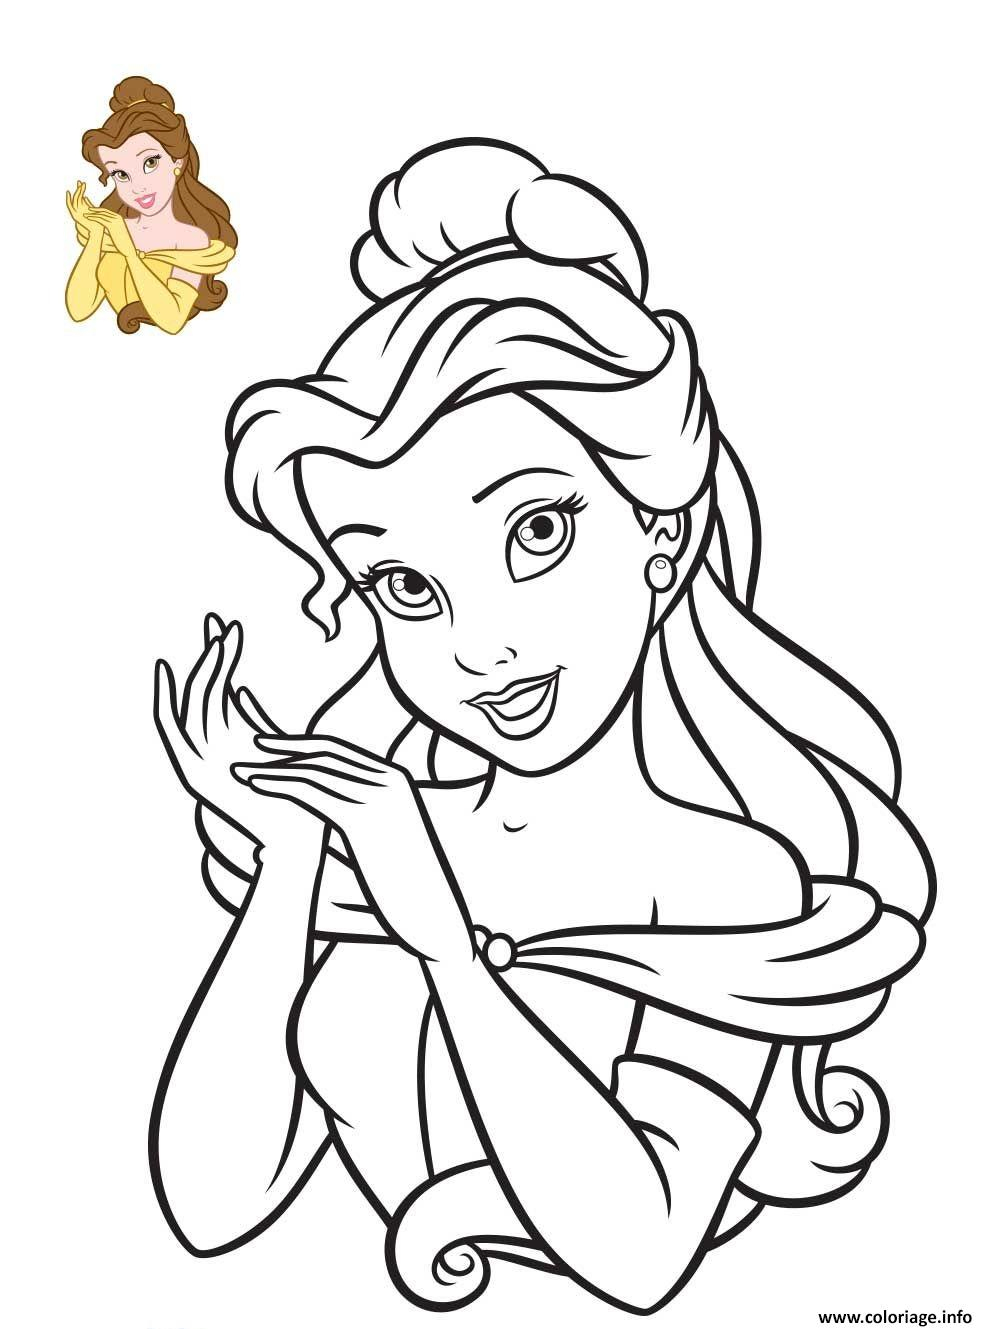 Coloriage Disney Princesse La Belle Et La Bete Dessin Disney Walt À pour Coloriages De Princesses